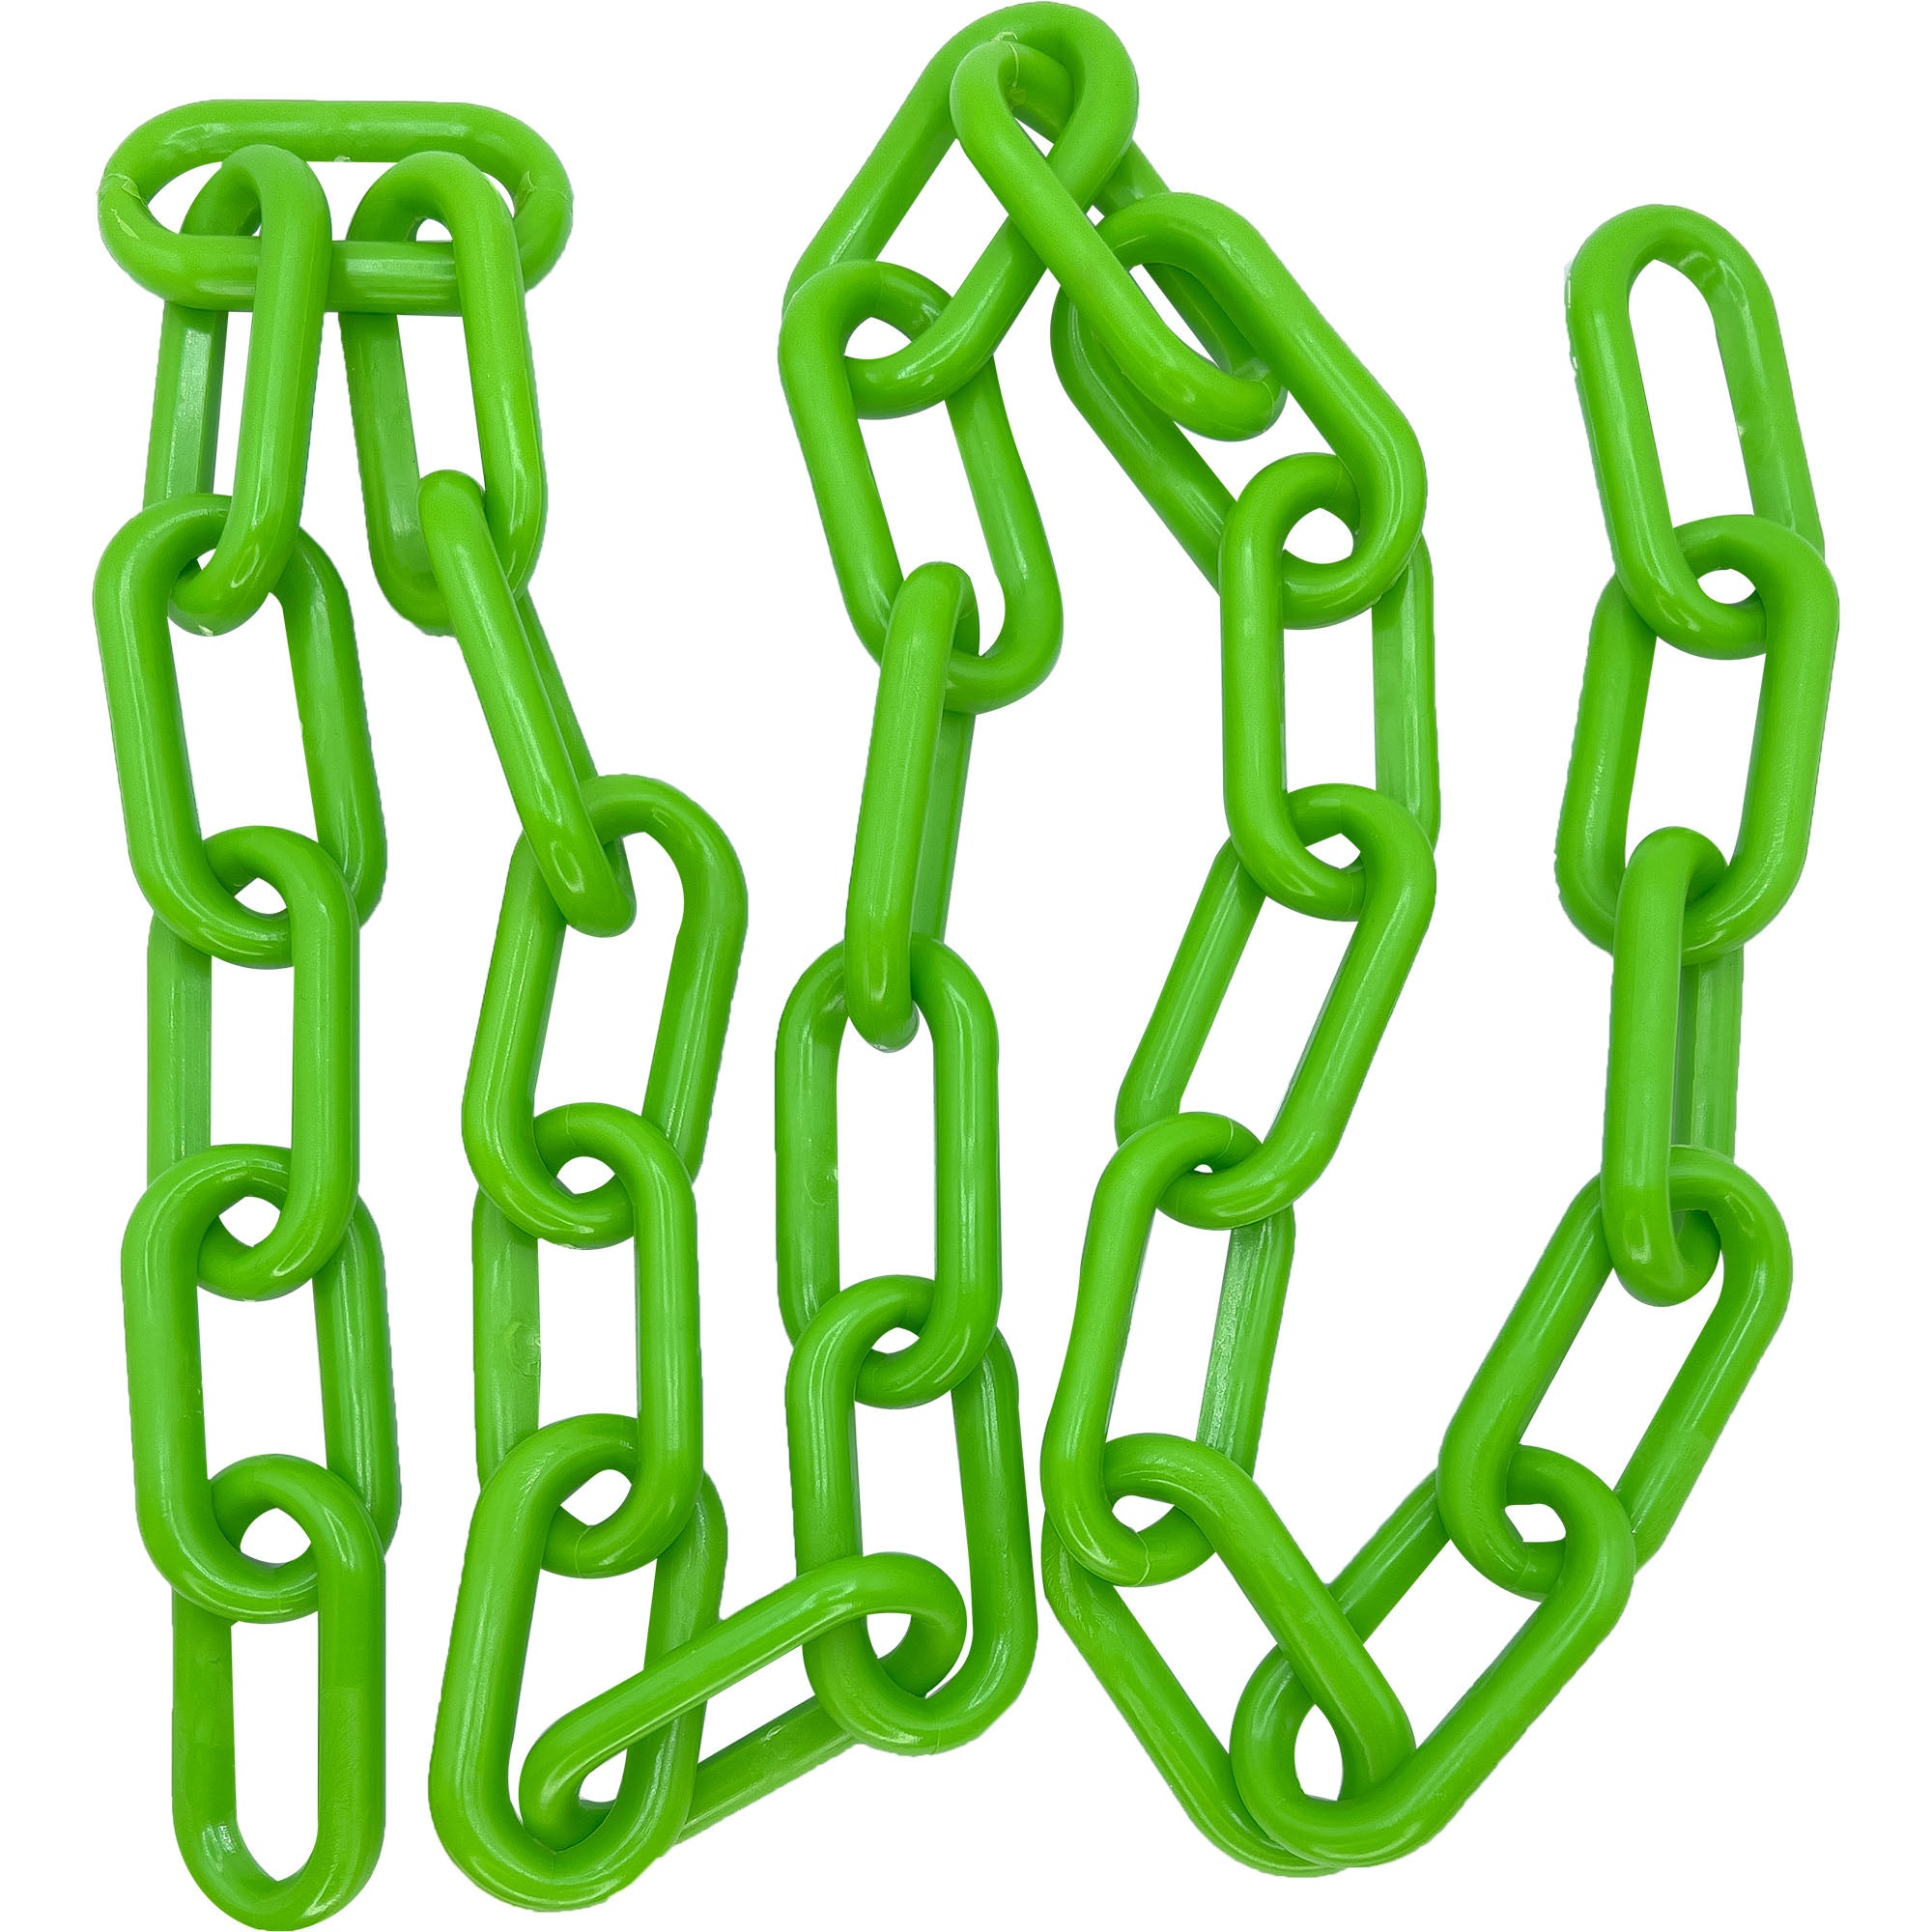 2002 5ft Big Green Plastic Chain